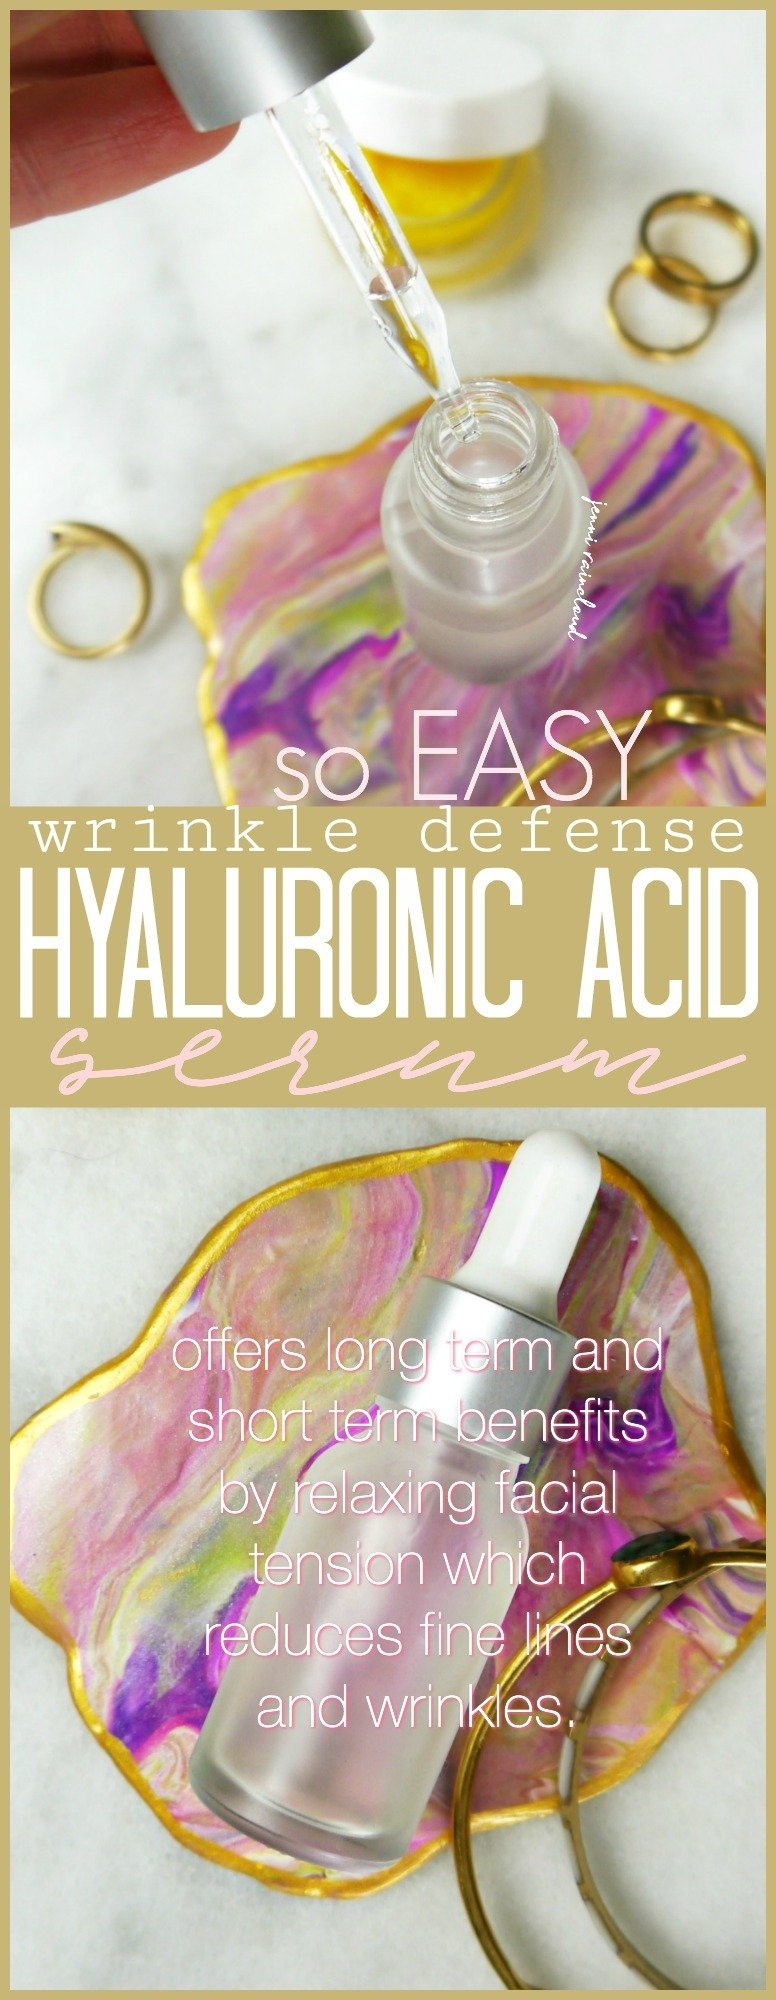 DIY Hyaluronic Acid Wrinkle Defense Serum